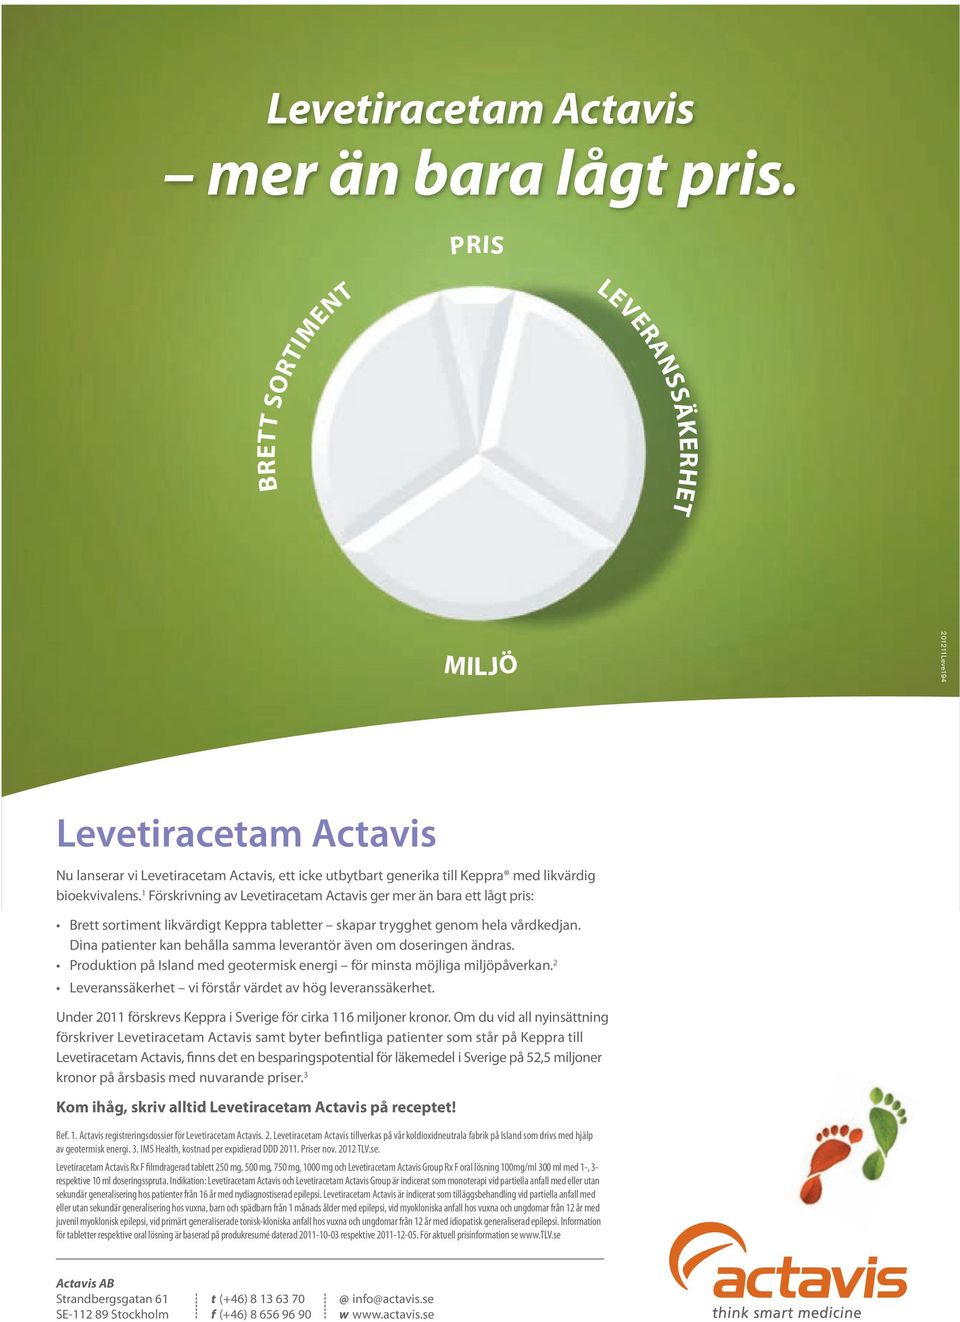 1 Förskrivning av Levetiracetam Actavis ger mer än bara ett lågt pris: Brett sortiment likvärdigt Keppra tabletter skapar trygghet genom hela vårdkedjan.